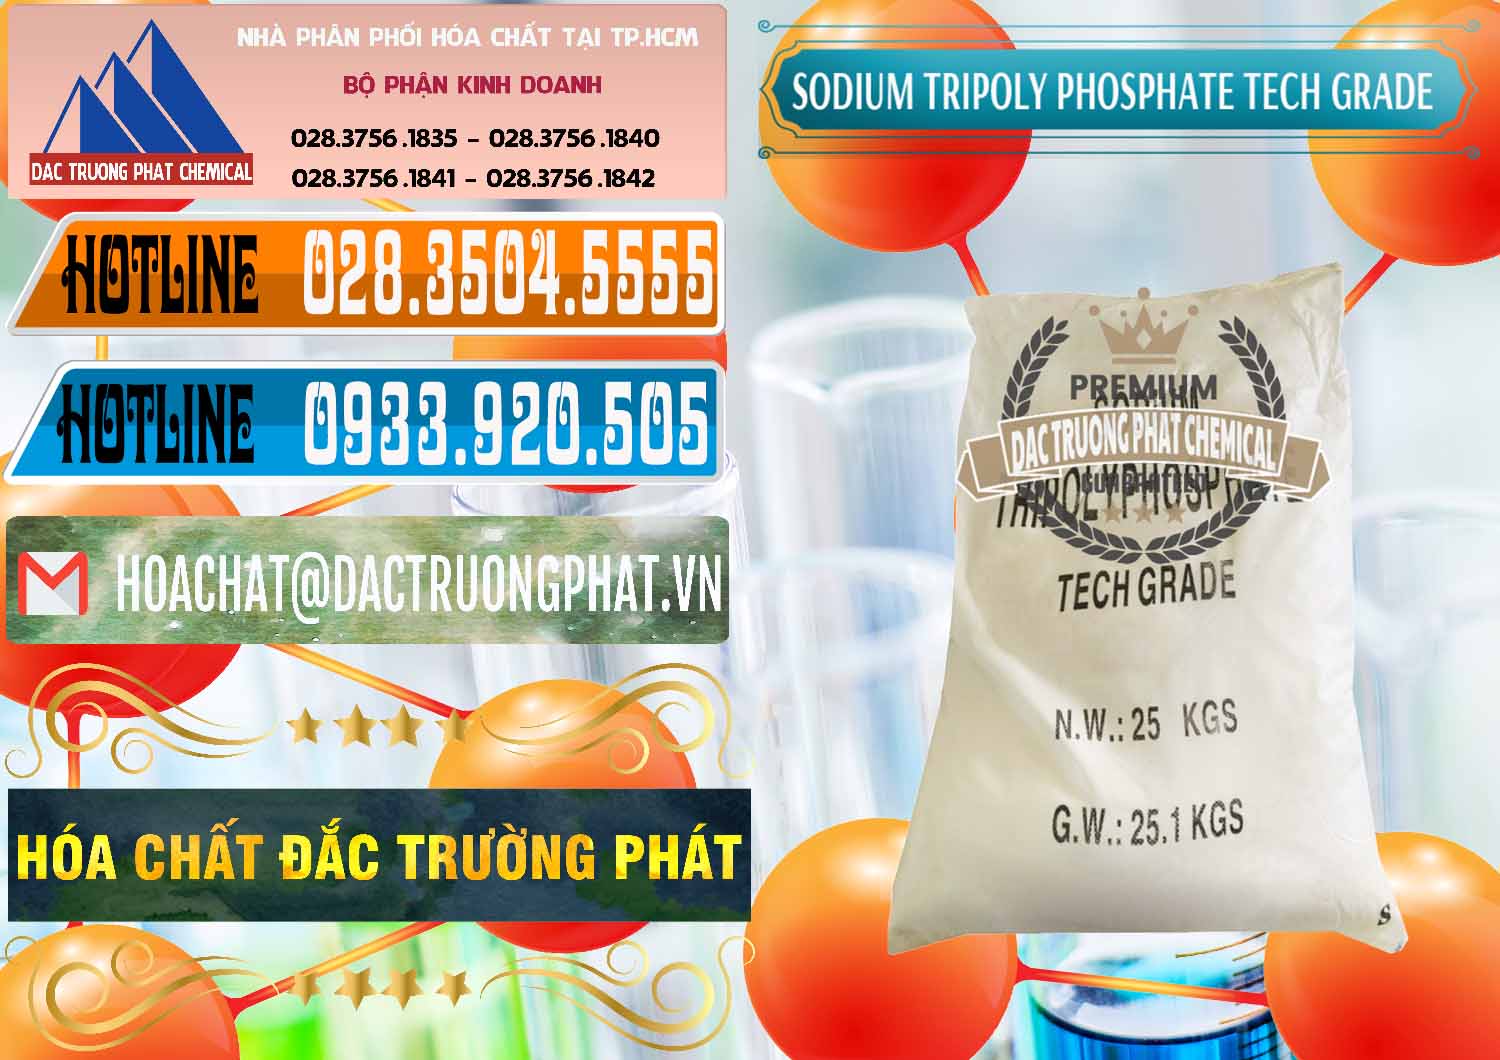 Nơi chuyên bán ( phân phối ) Sodium Tripoly Phosphate - STPP Tech Grade Trung Quốc China - 0453 - Chuyên cung cấp & phân phối hóa chất tại TP.HCM - stmp.net